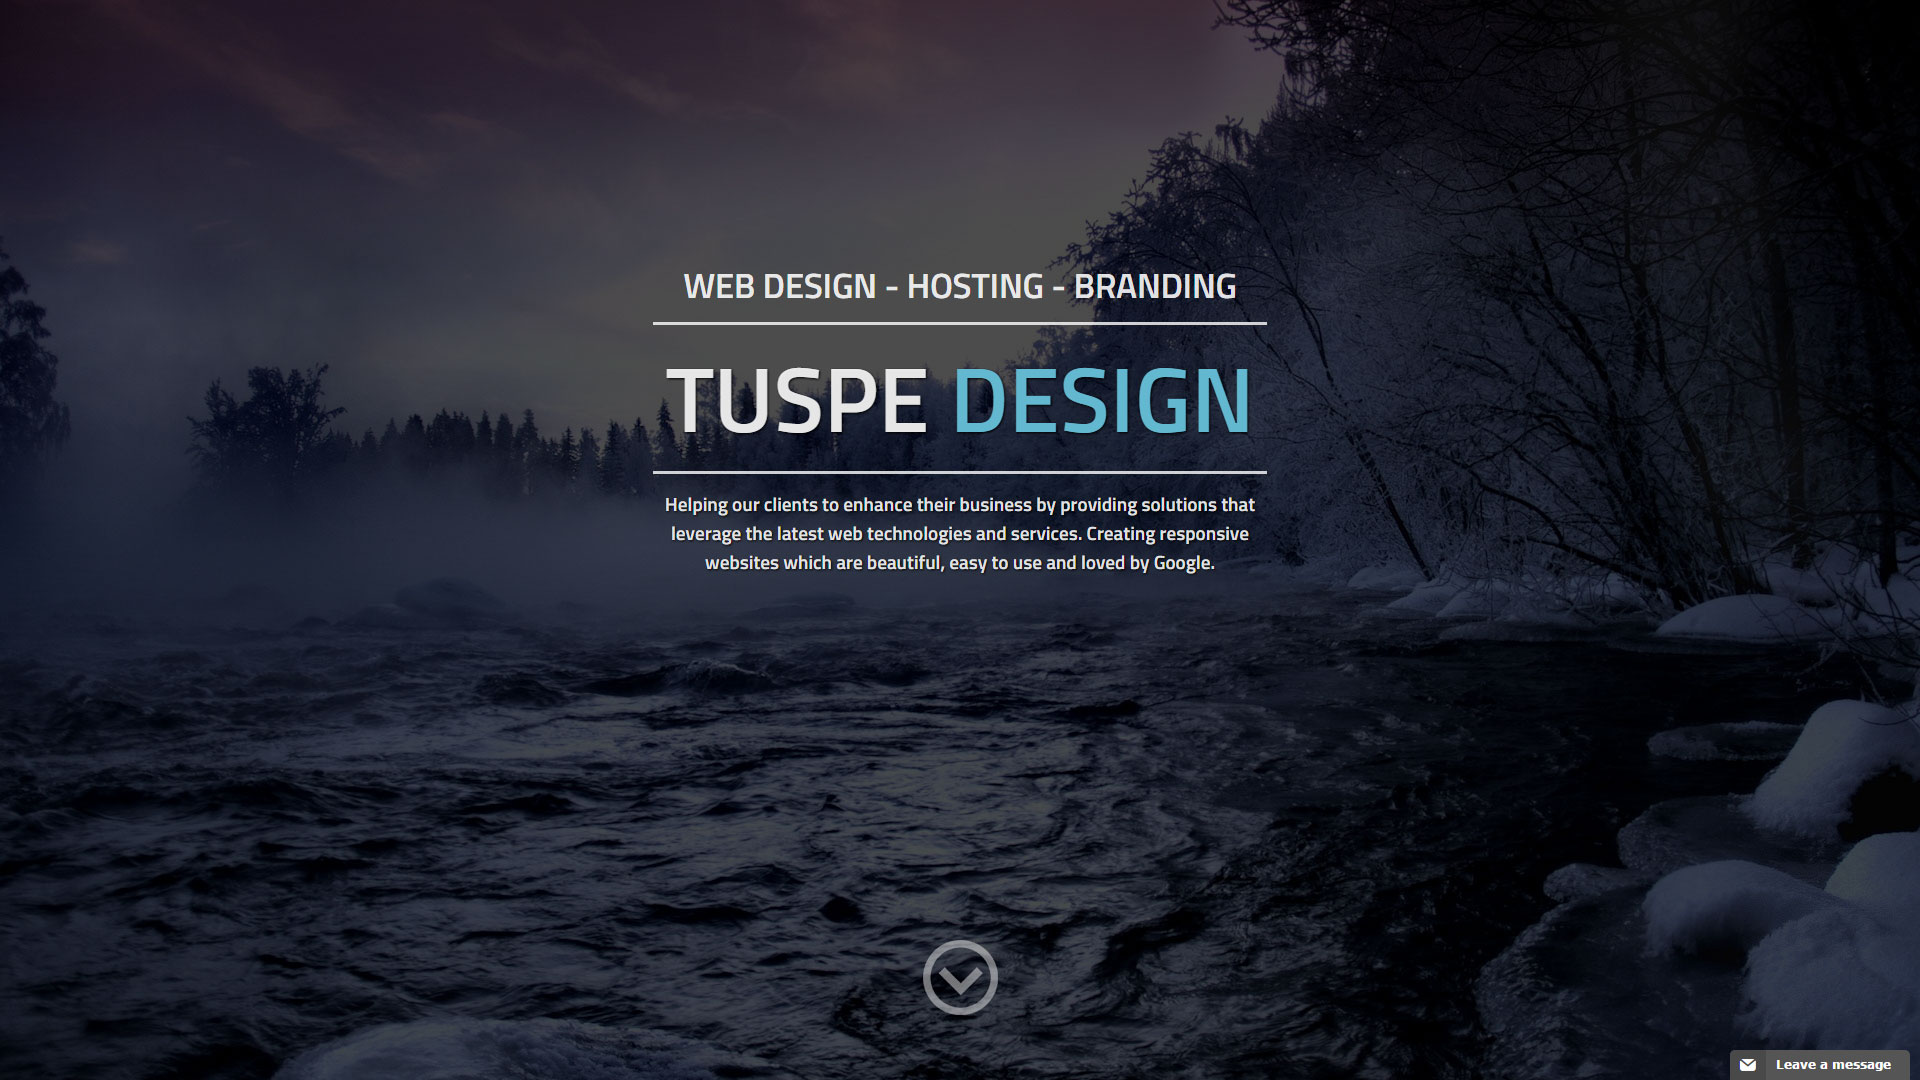 Tuspe Design